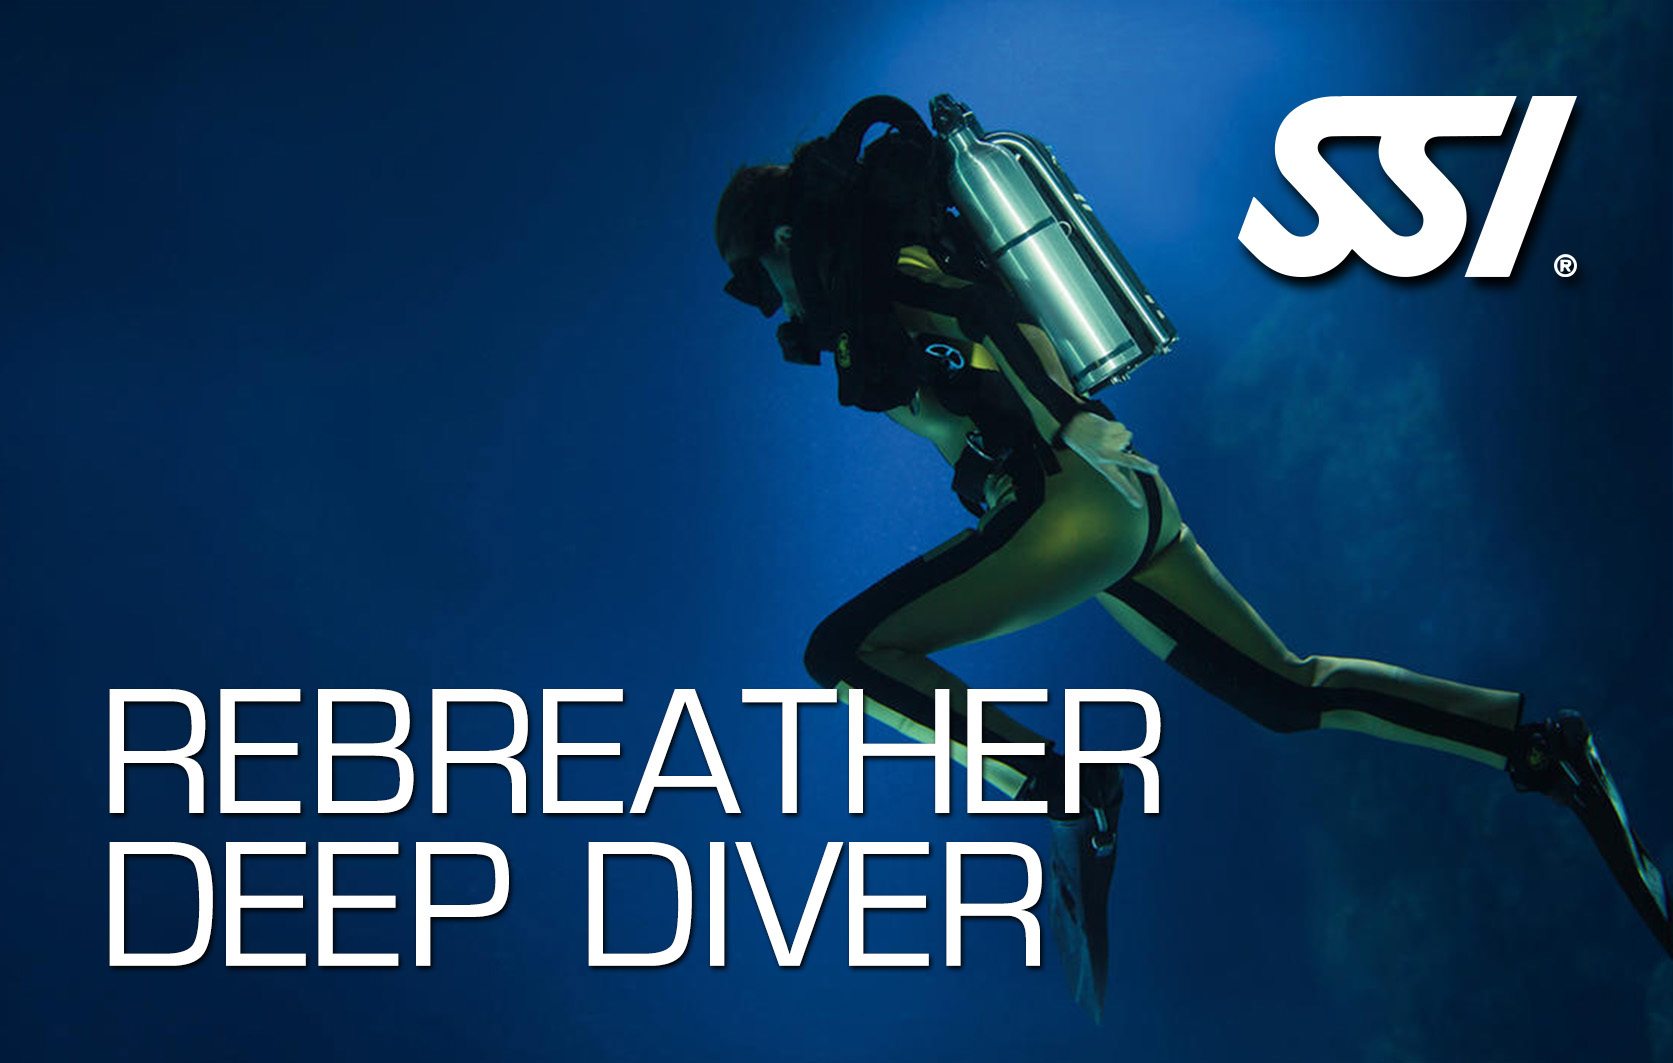 SSI Rebreather Deep Diver | SSI Rebreather Deep Diver | Rebreather Deep Diver | Diving Course